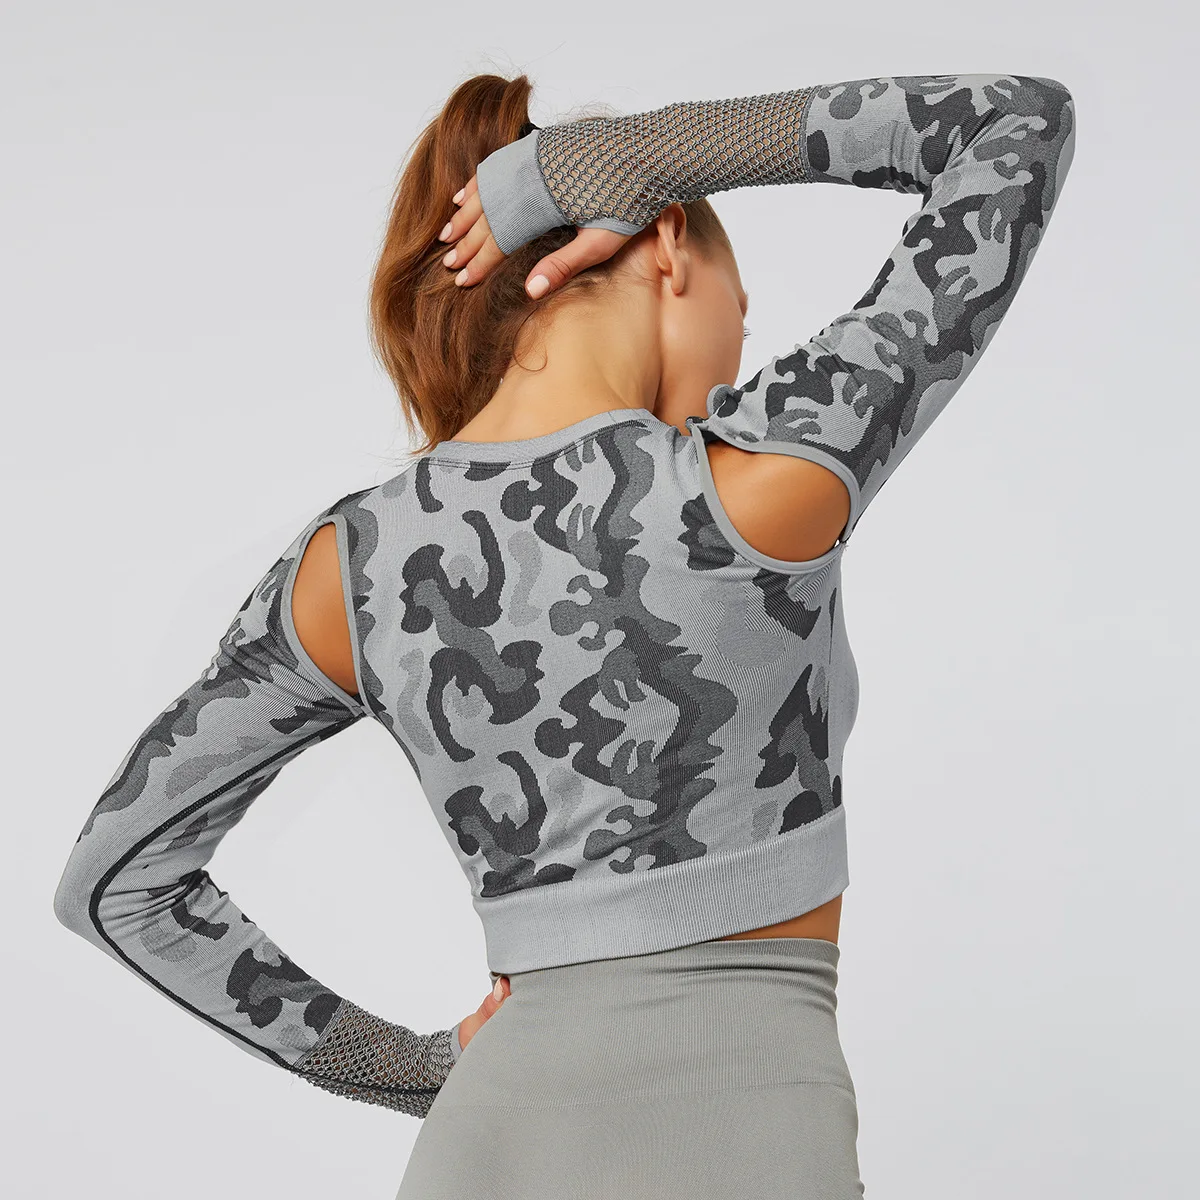 Camo Yoga спортивный короткий топ спортивная футболка с длинным рукавом Топы для тренировок для женщин бесшовная футболка для спортзала женские фитнес-футболки спортивная одежда